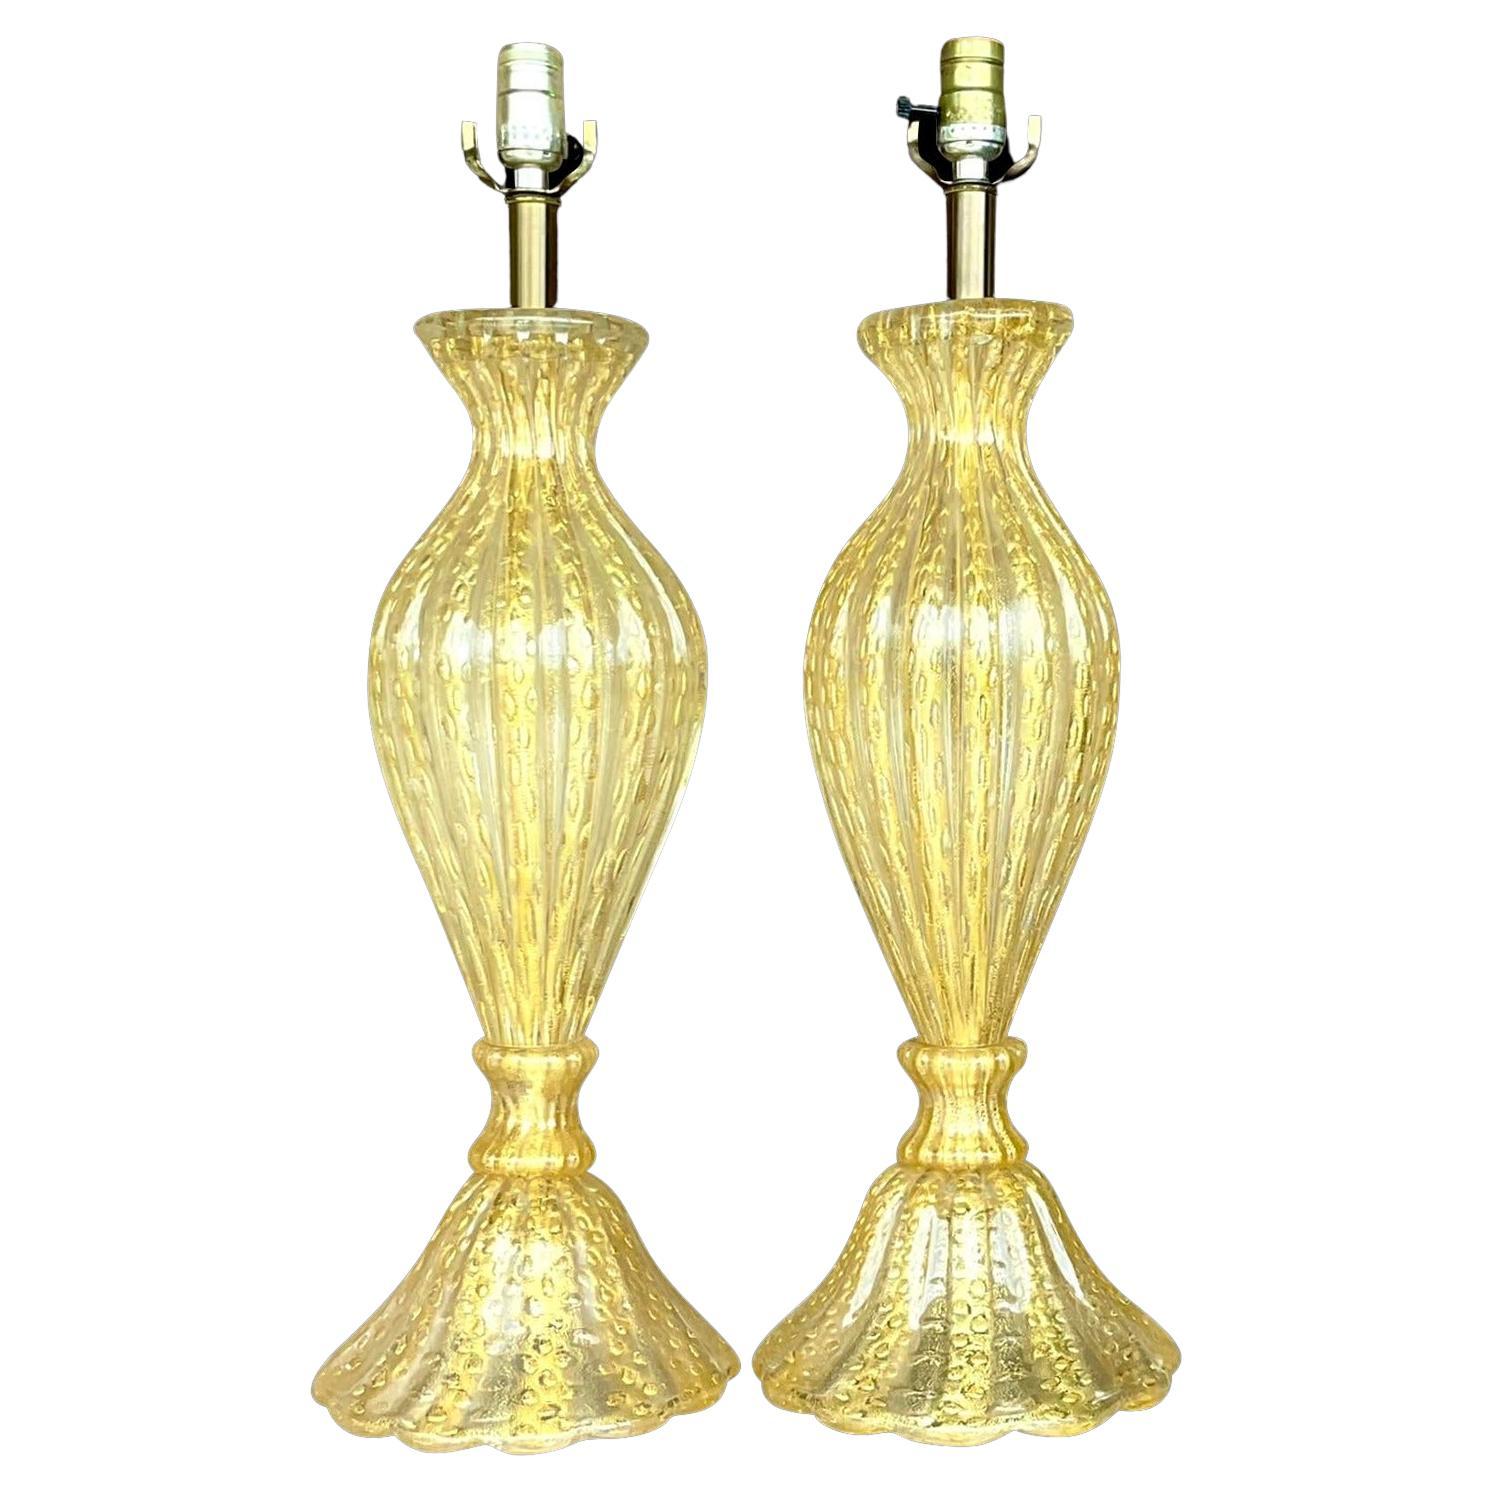 Vintage Regency restaurierte Murano Glas Tischlampen - ein Paar